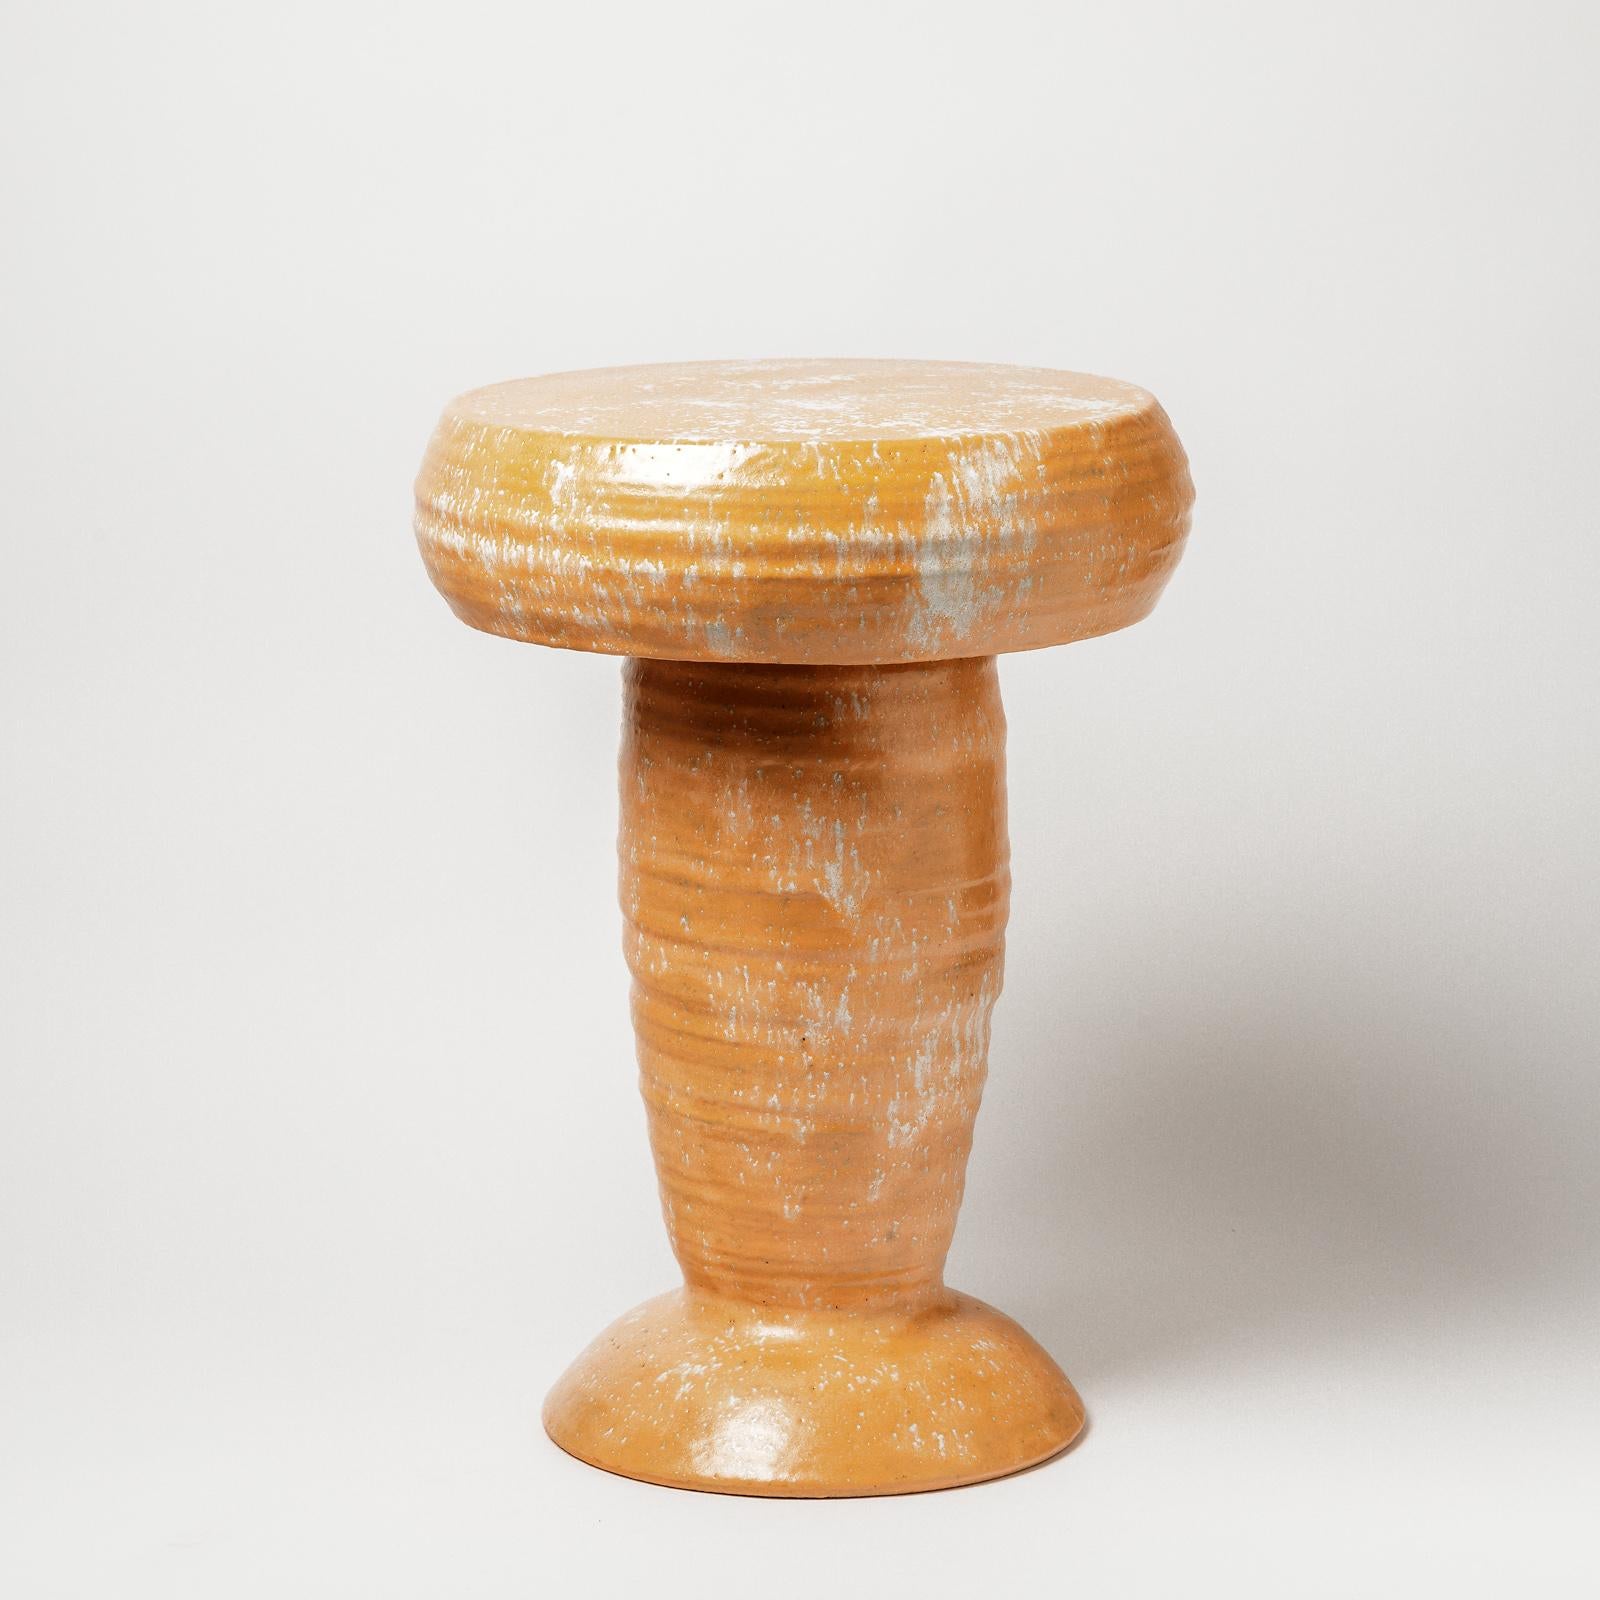 Un tabouret en céramique avec des glaçures orange et blanches décorées par Mia Jensen.
Pièce unique.
Signé sous la base.
Vers 2021.